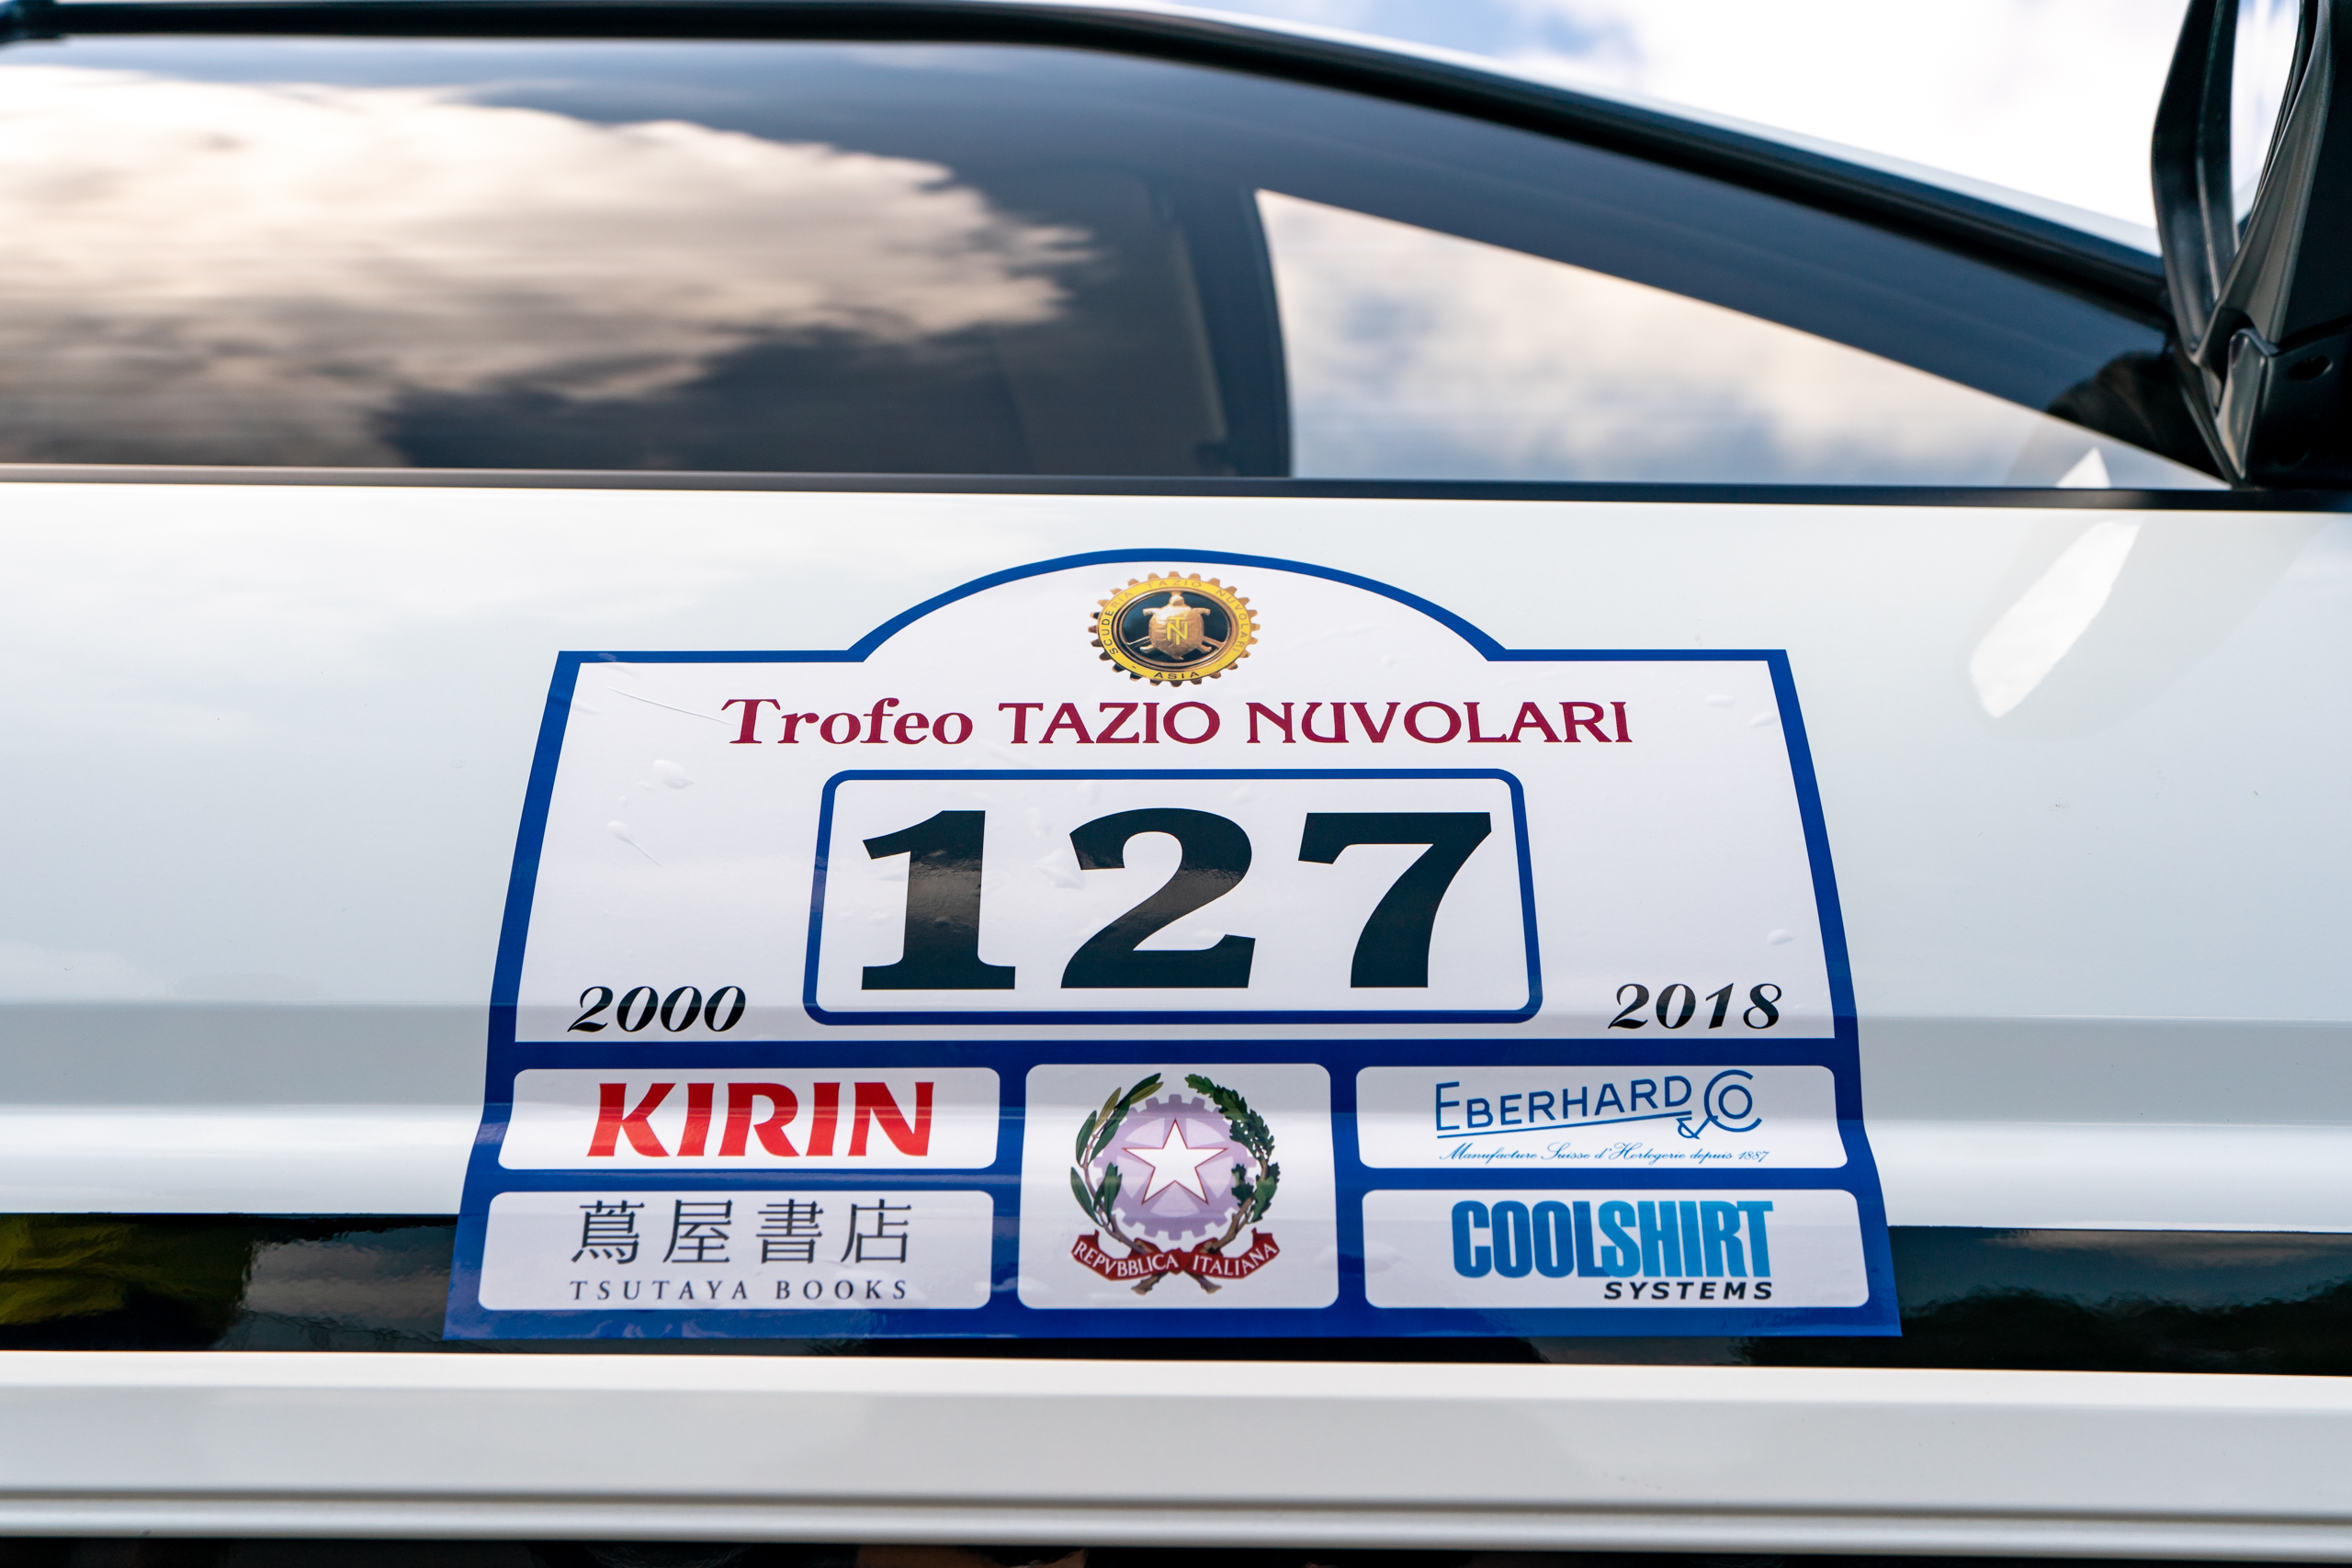 Trofeo Tazio Nuvolari